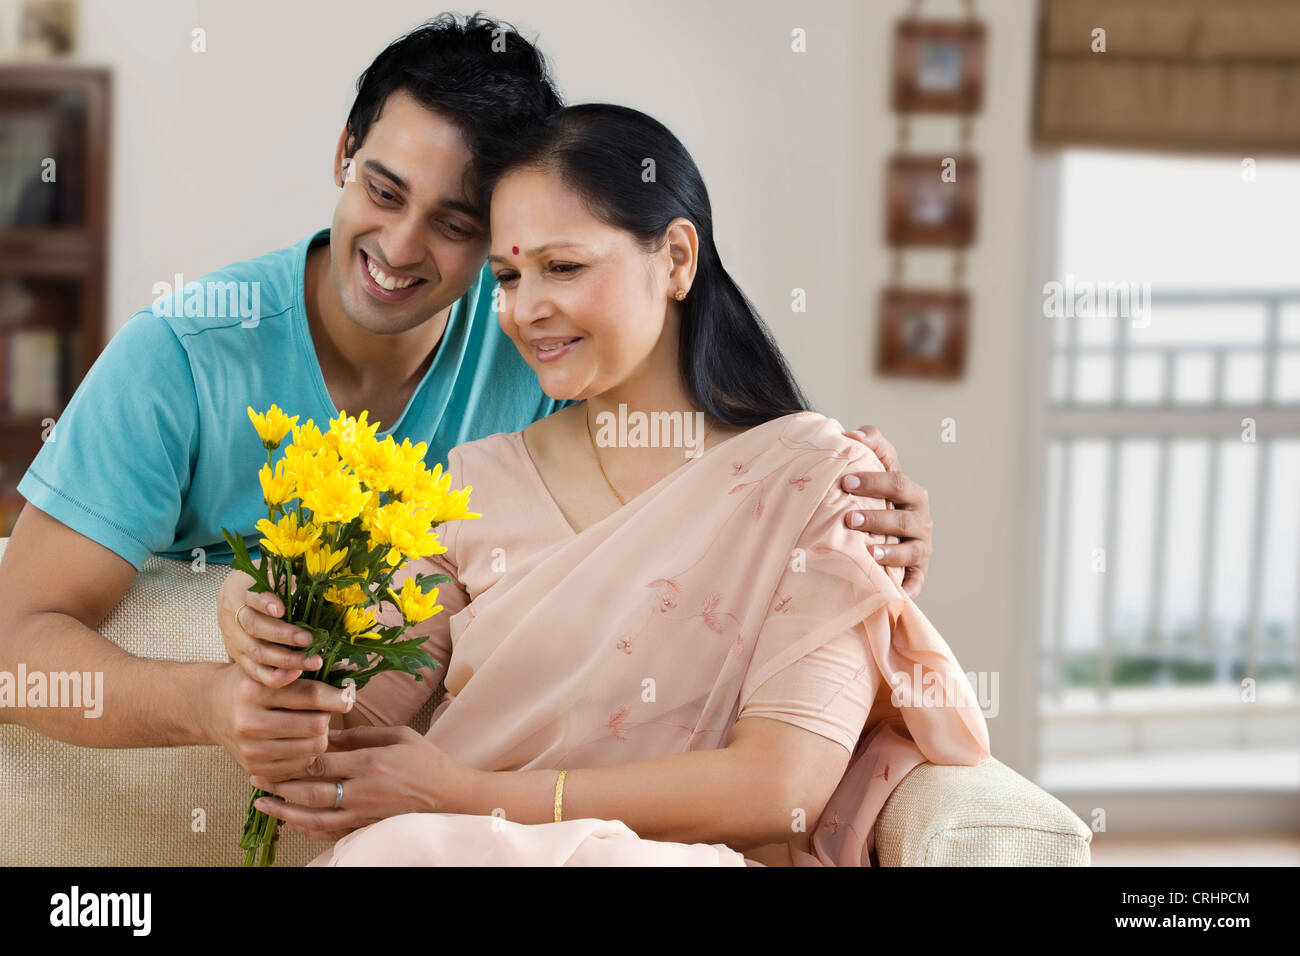 junger Mann verschenken Blumenstrauß an seine Mutter Stockfoto